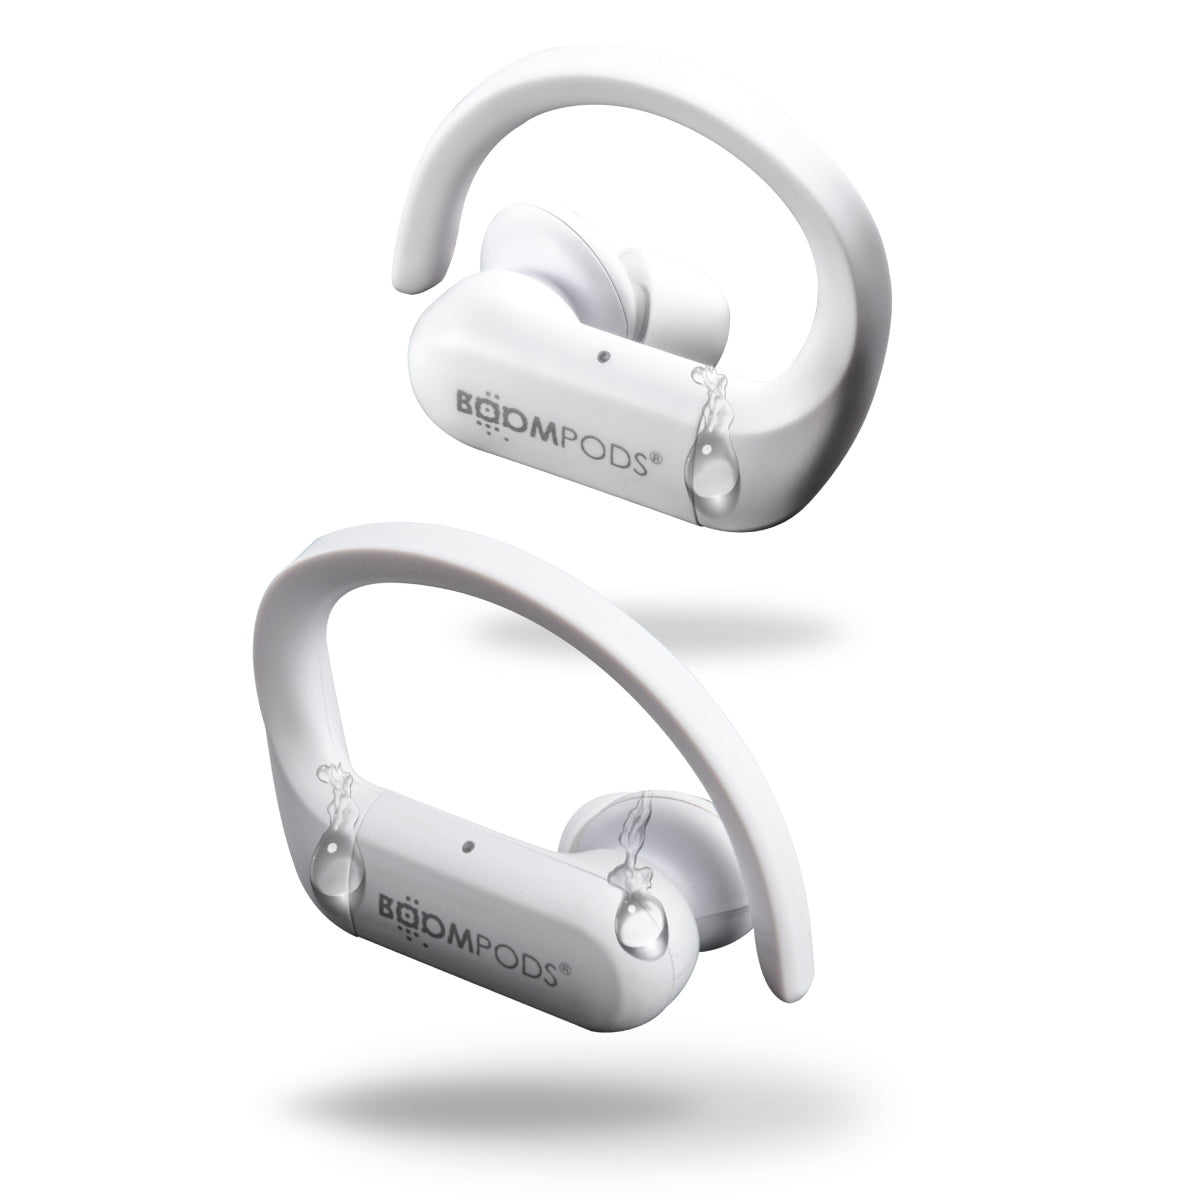 Sportpods True Wireless Earbuds